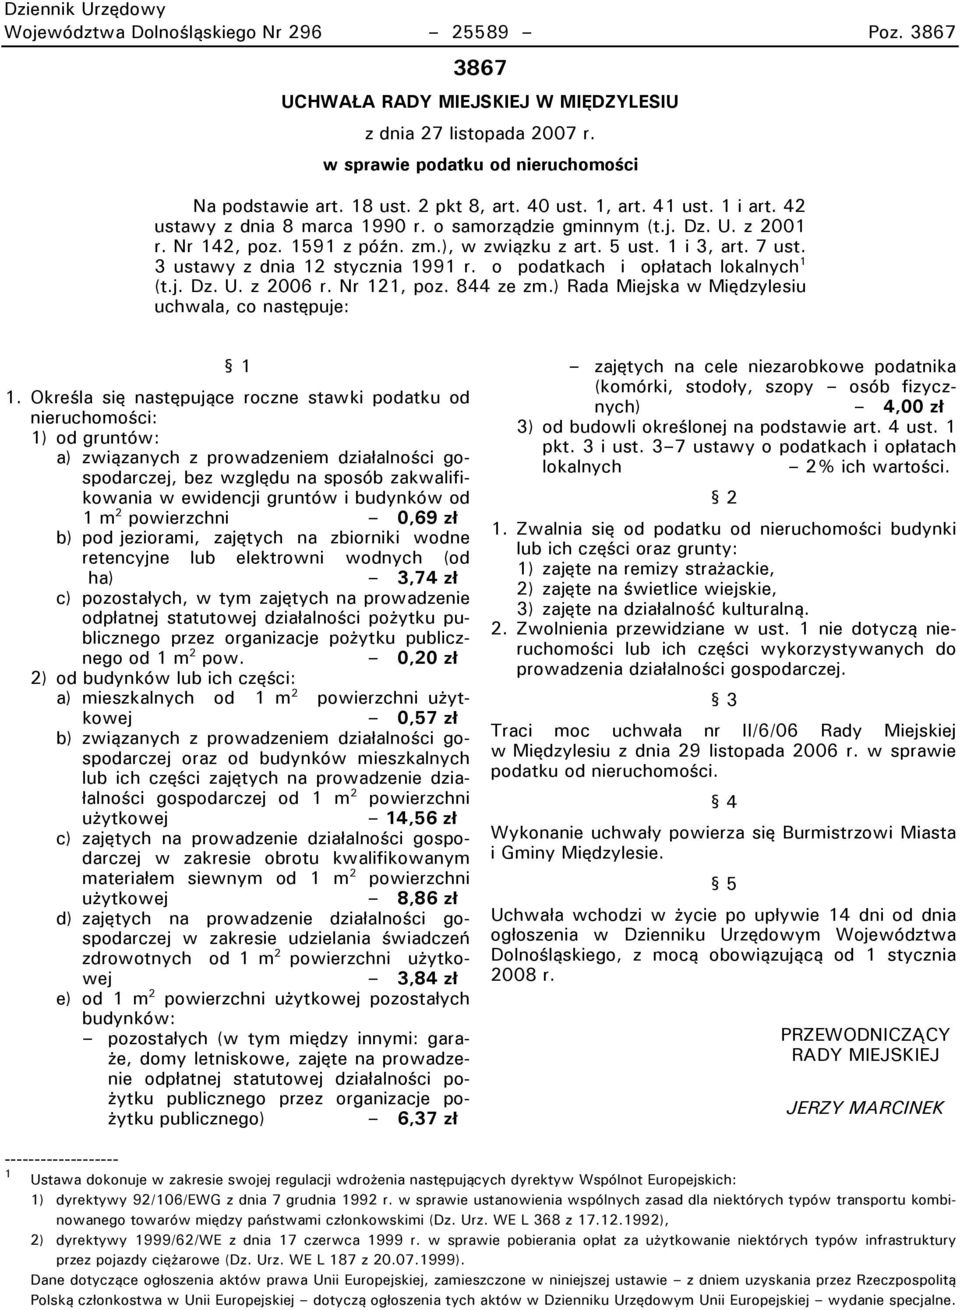 V ustawy z dnia 12 stycznia 1991 r. o podatkach i opłatach lokalnych 1 (t.j. Dz. U. z 2006 r. Nr 121t poz. 844 ze zm.) Rada Miejska w Międzylesiu uchwalat co następuje: 1.